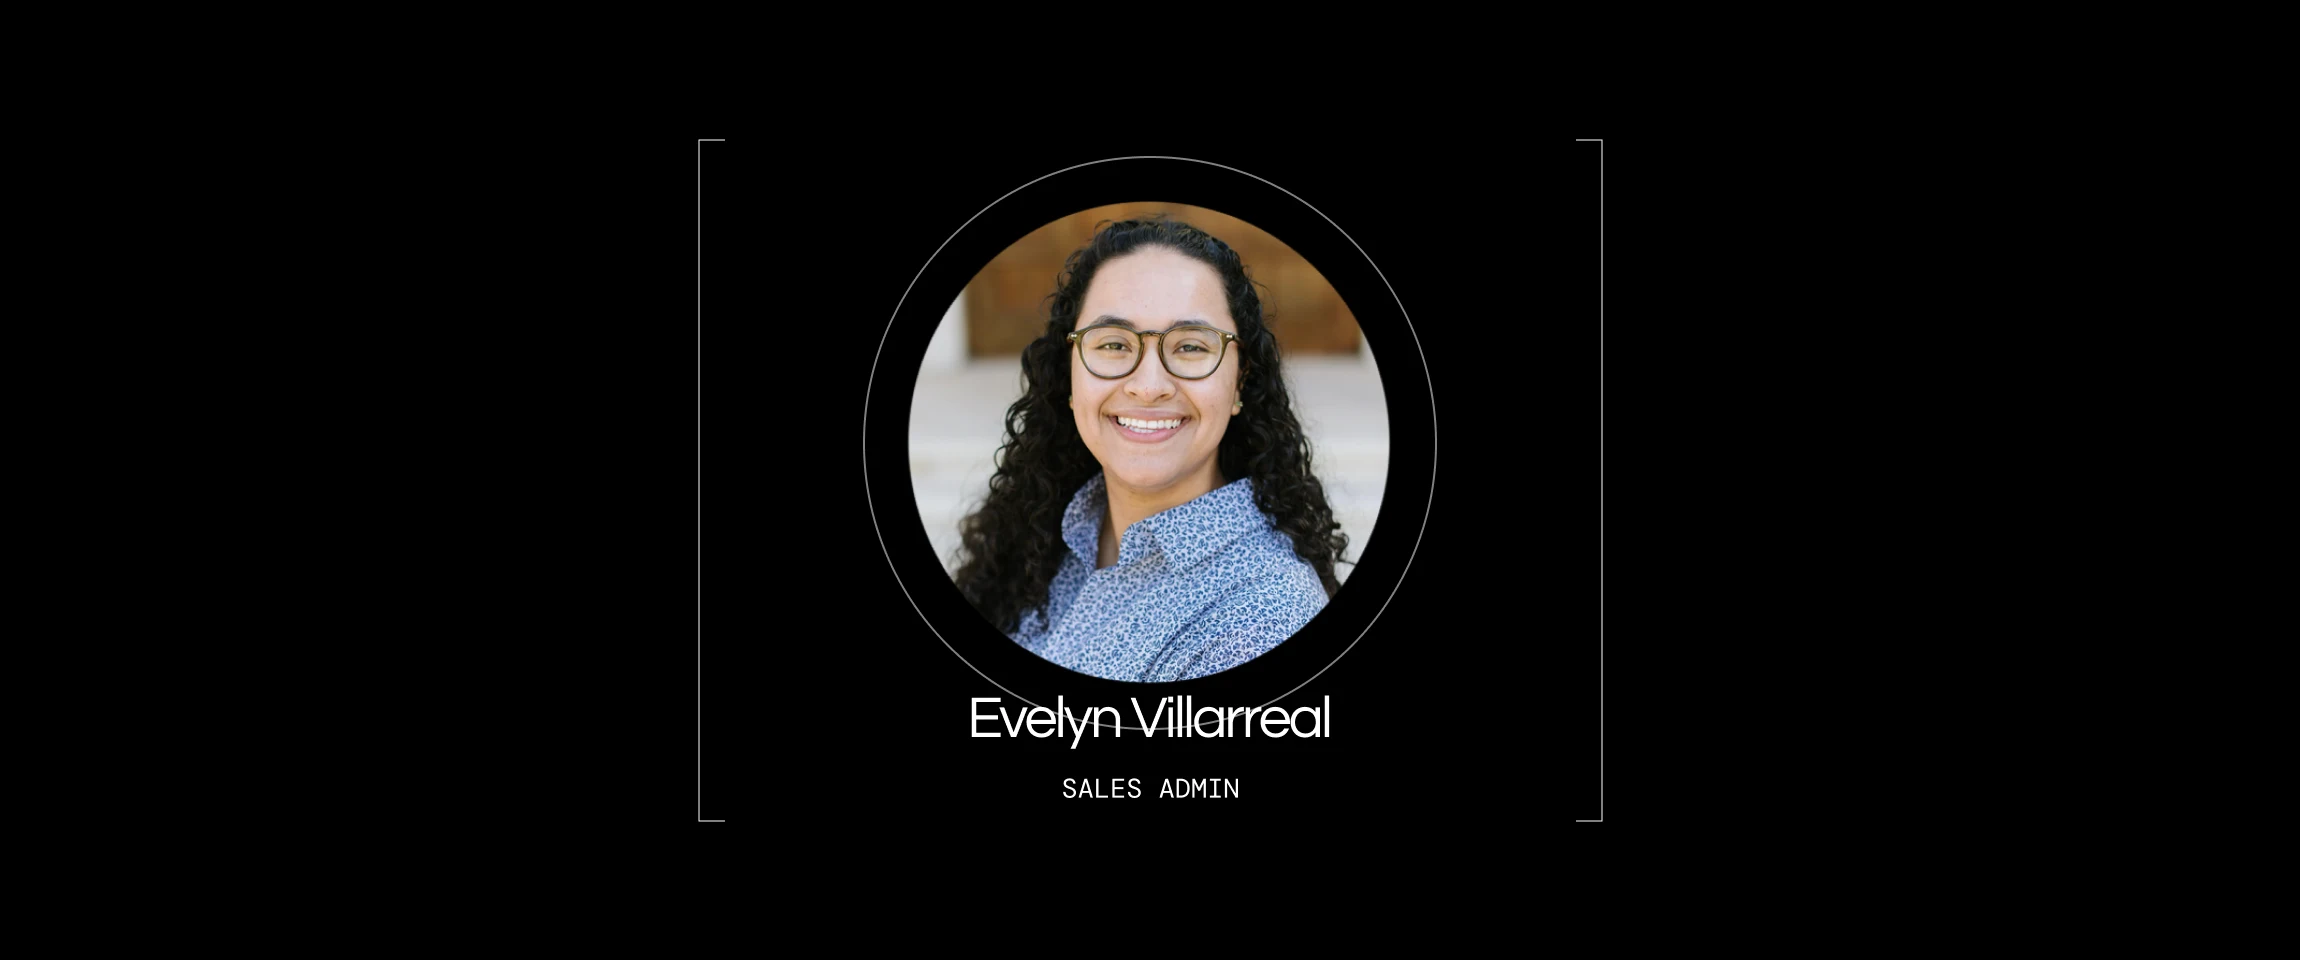 Meet Evelyn